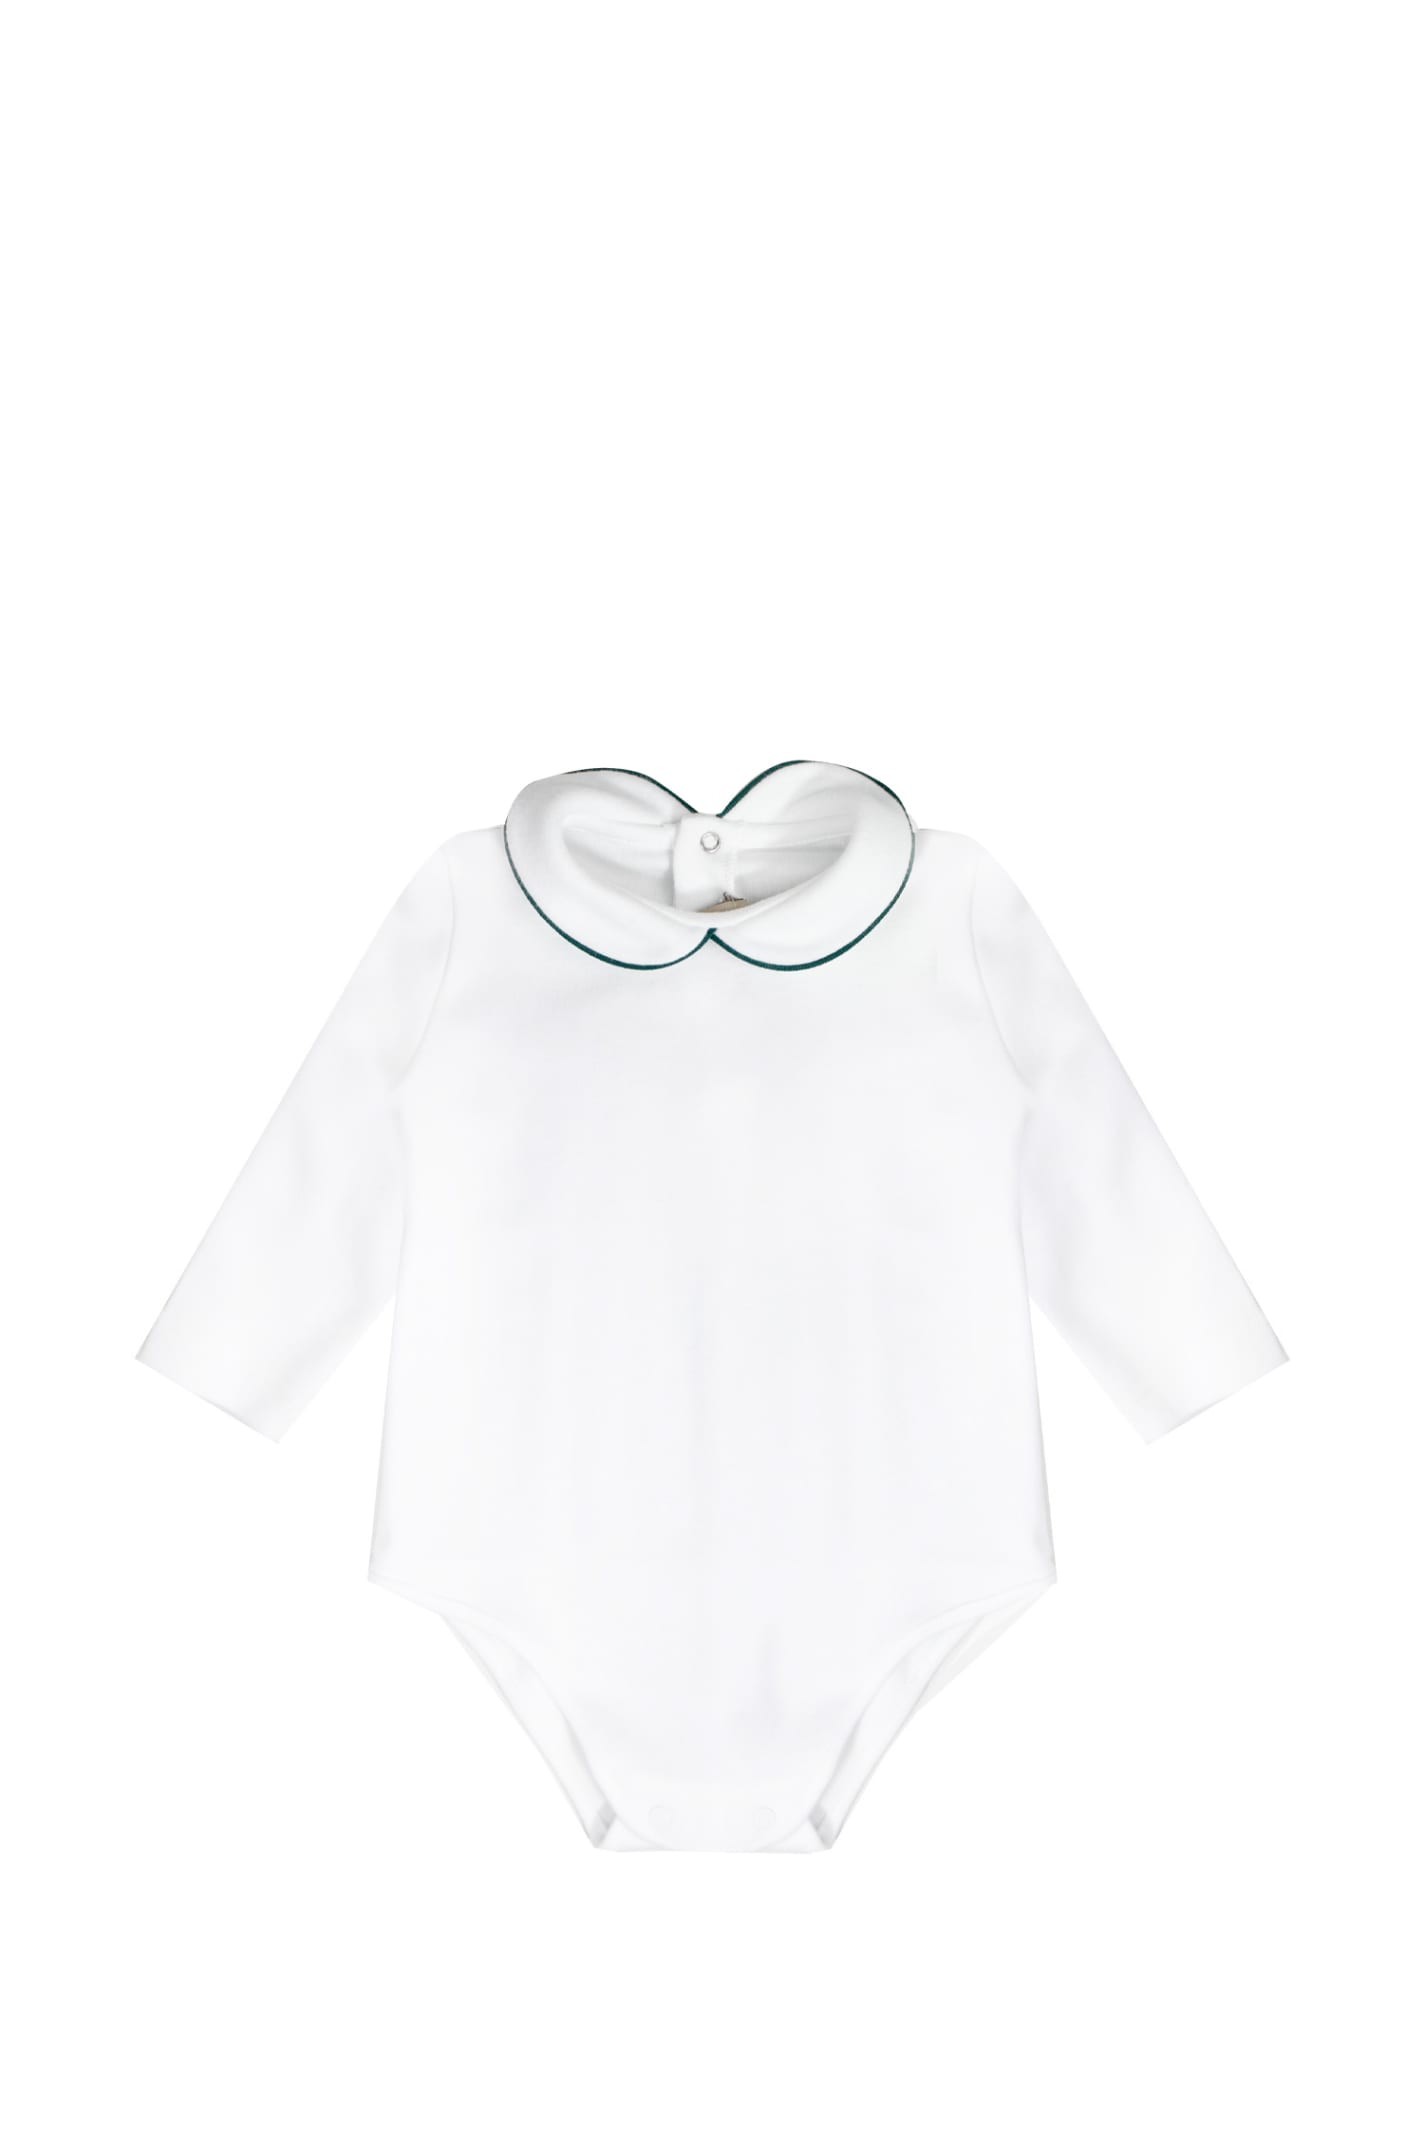 La Stupenderia Babies' Cotton Body In White